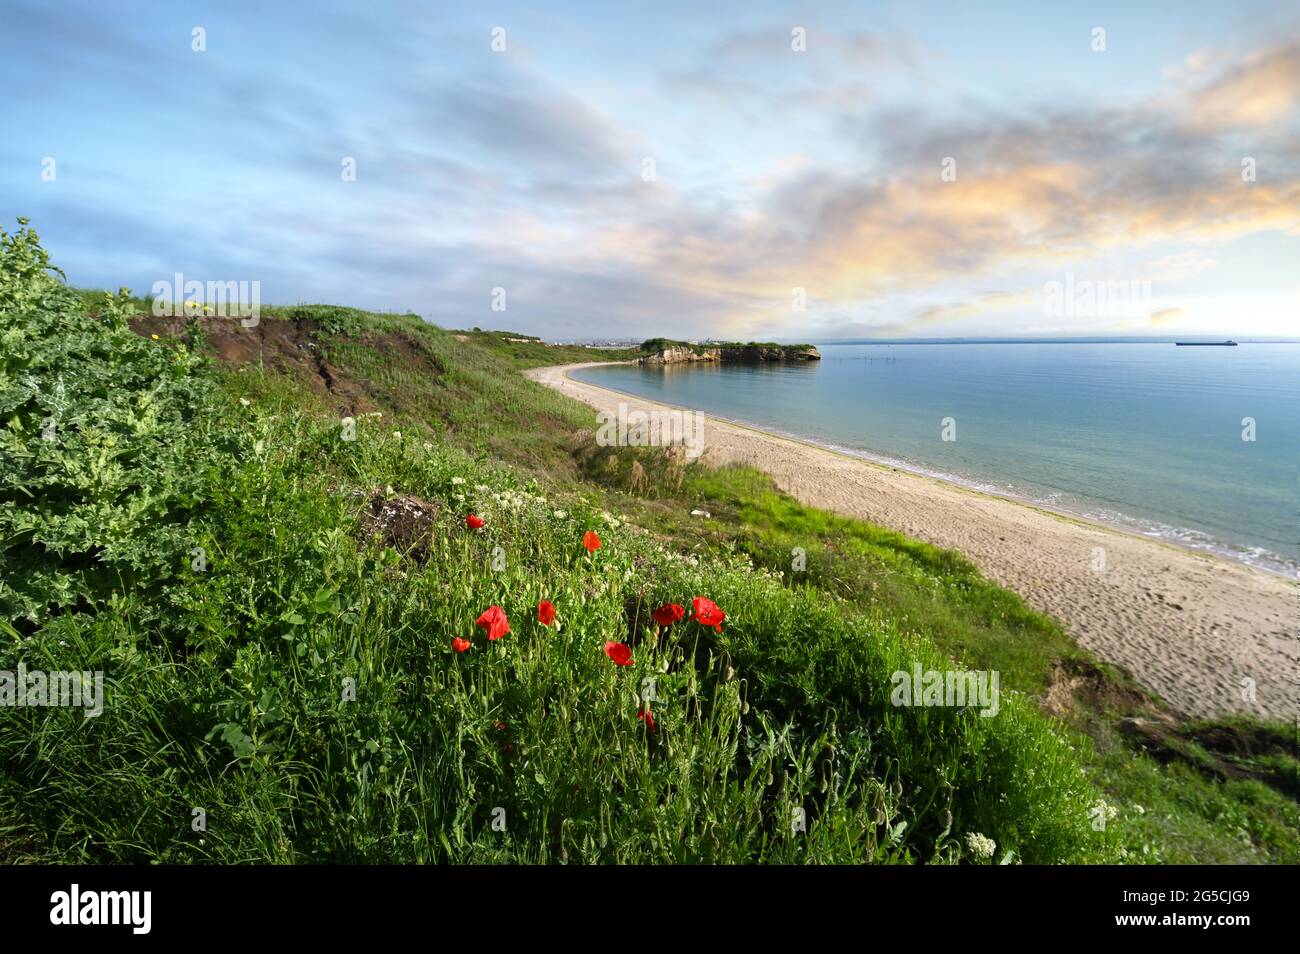 Mare delle rocce sulla costa di Kraimorie, regione di Burgas, Bulgaria. La bellissima spiaggia del mare nero con fiori di papavero selvaggi. Foto Stock